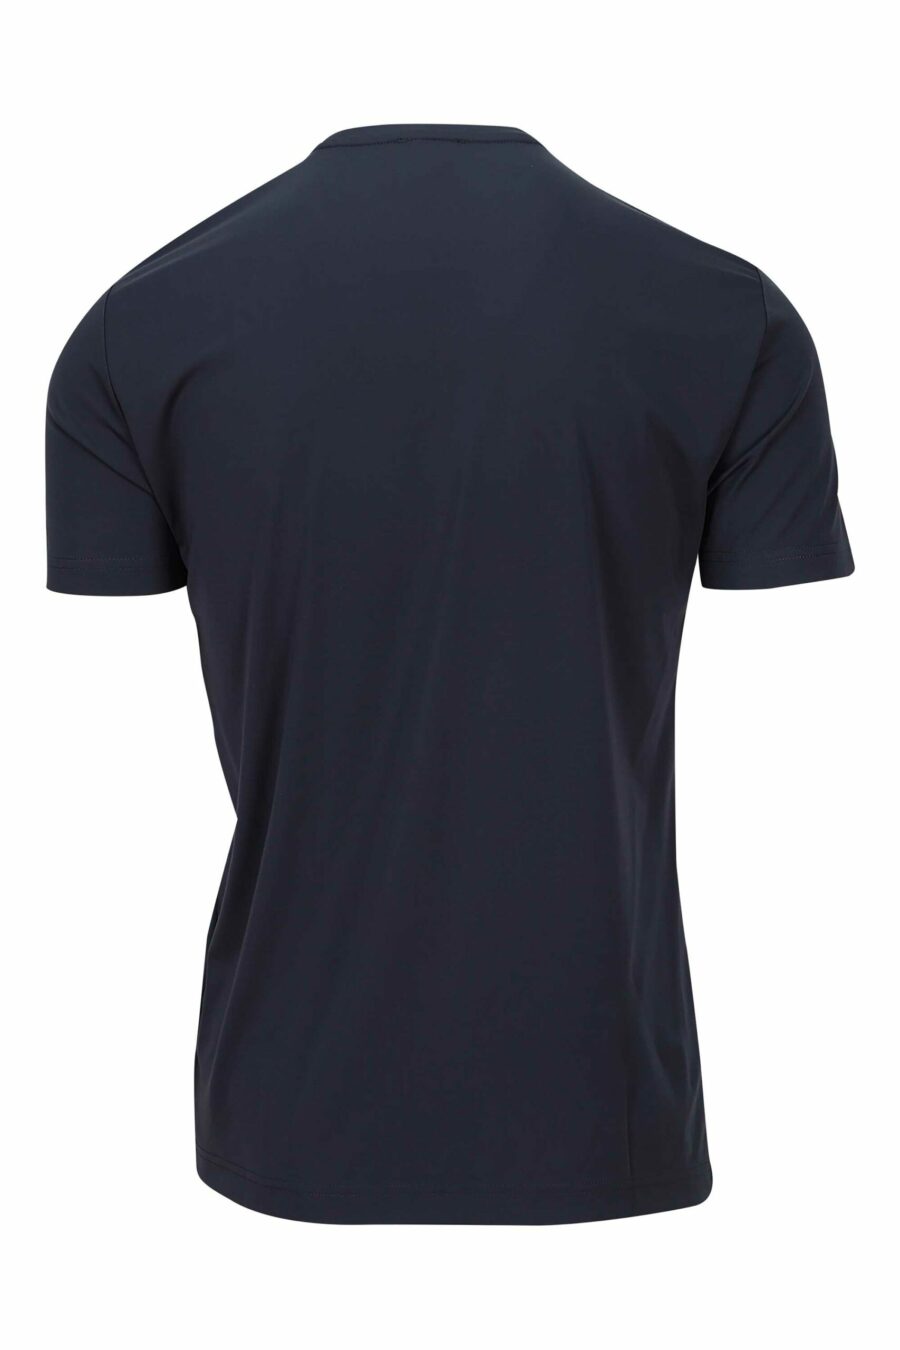 Marineblaues T-Shirt mit "lux identity"-Mini-Schild - 8057767519964 1 skaliert